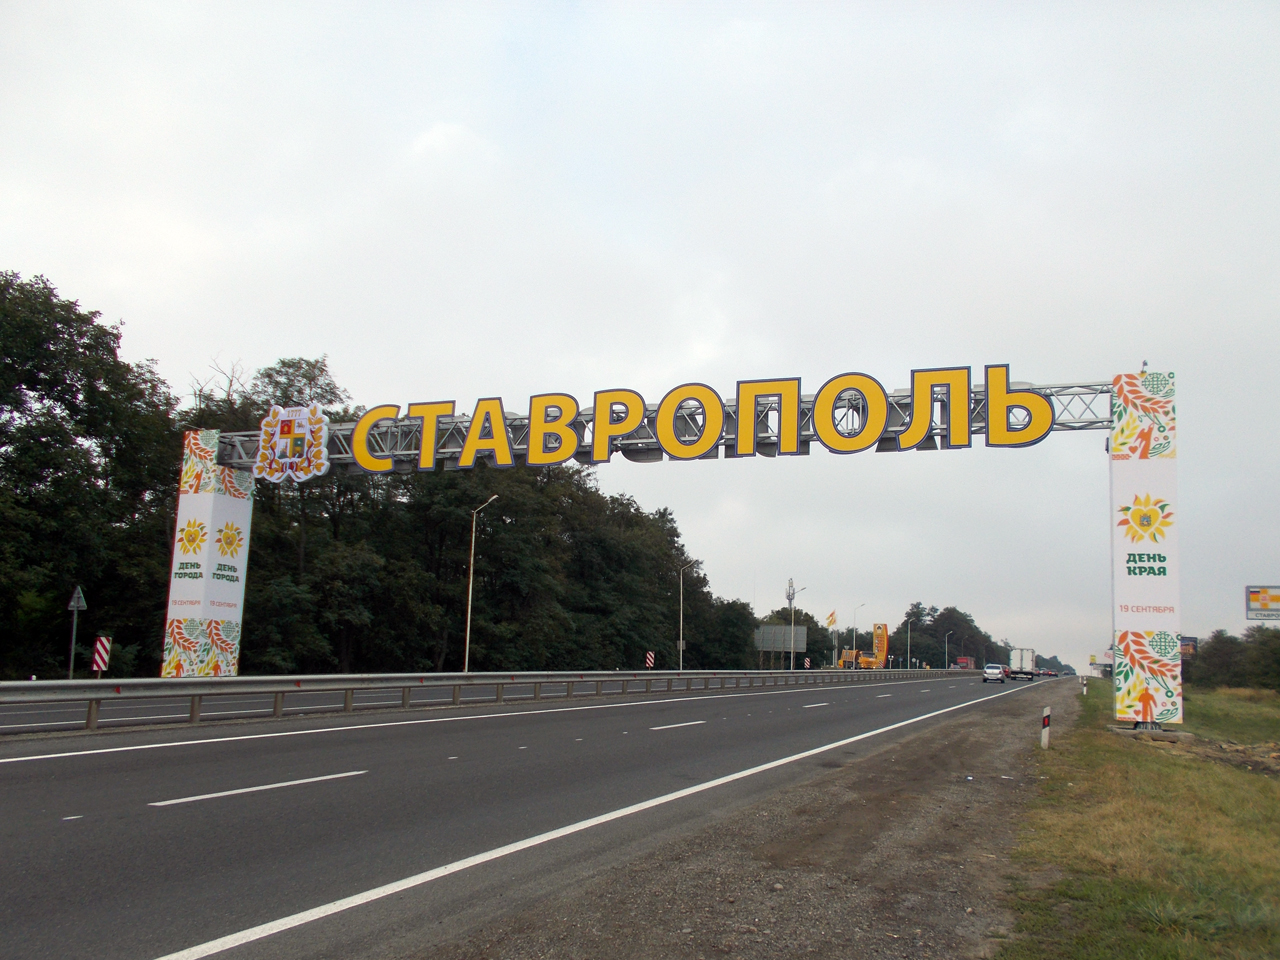 Стелла городов Ставропольский край на въезде